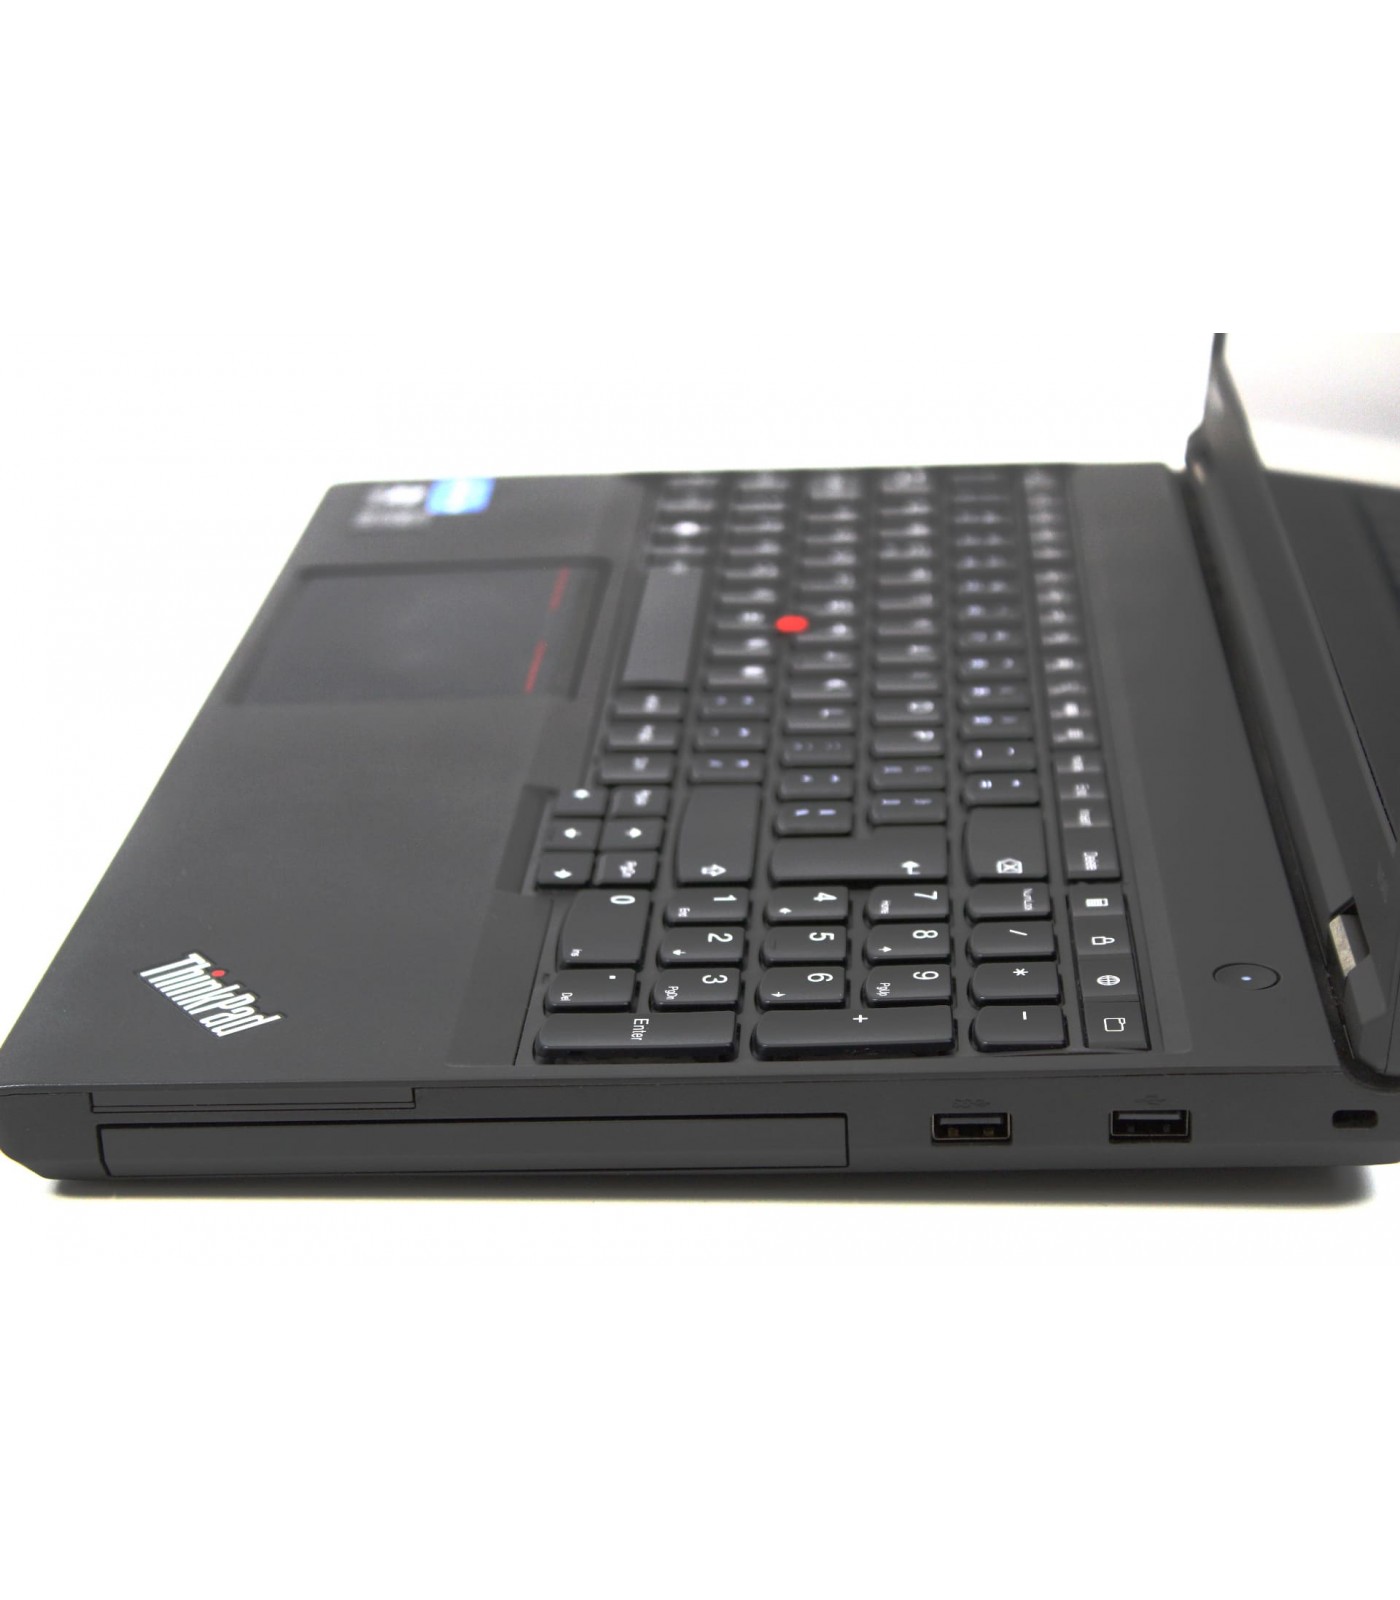 Poleasingowy Laptop Lenovo Thinkpad W540 z i7 oraz  dedykowana karta Nvidia Quadro w klasie A